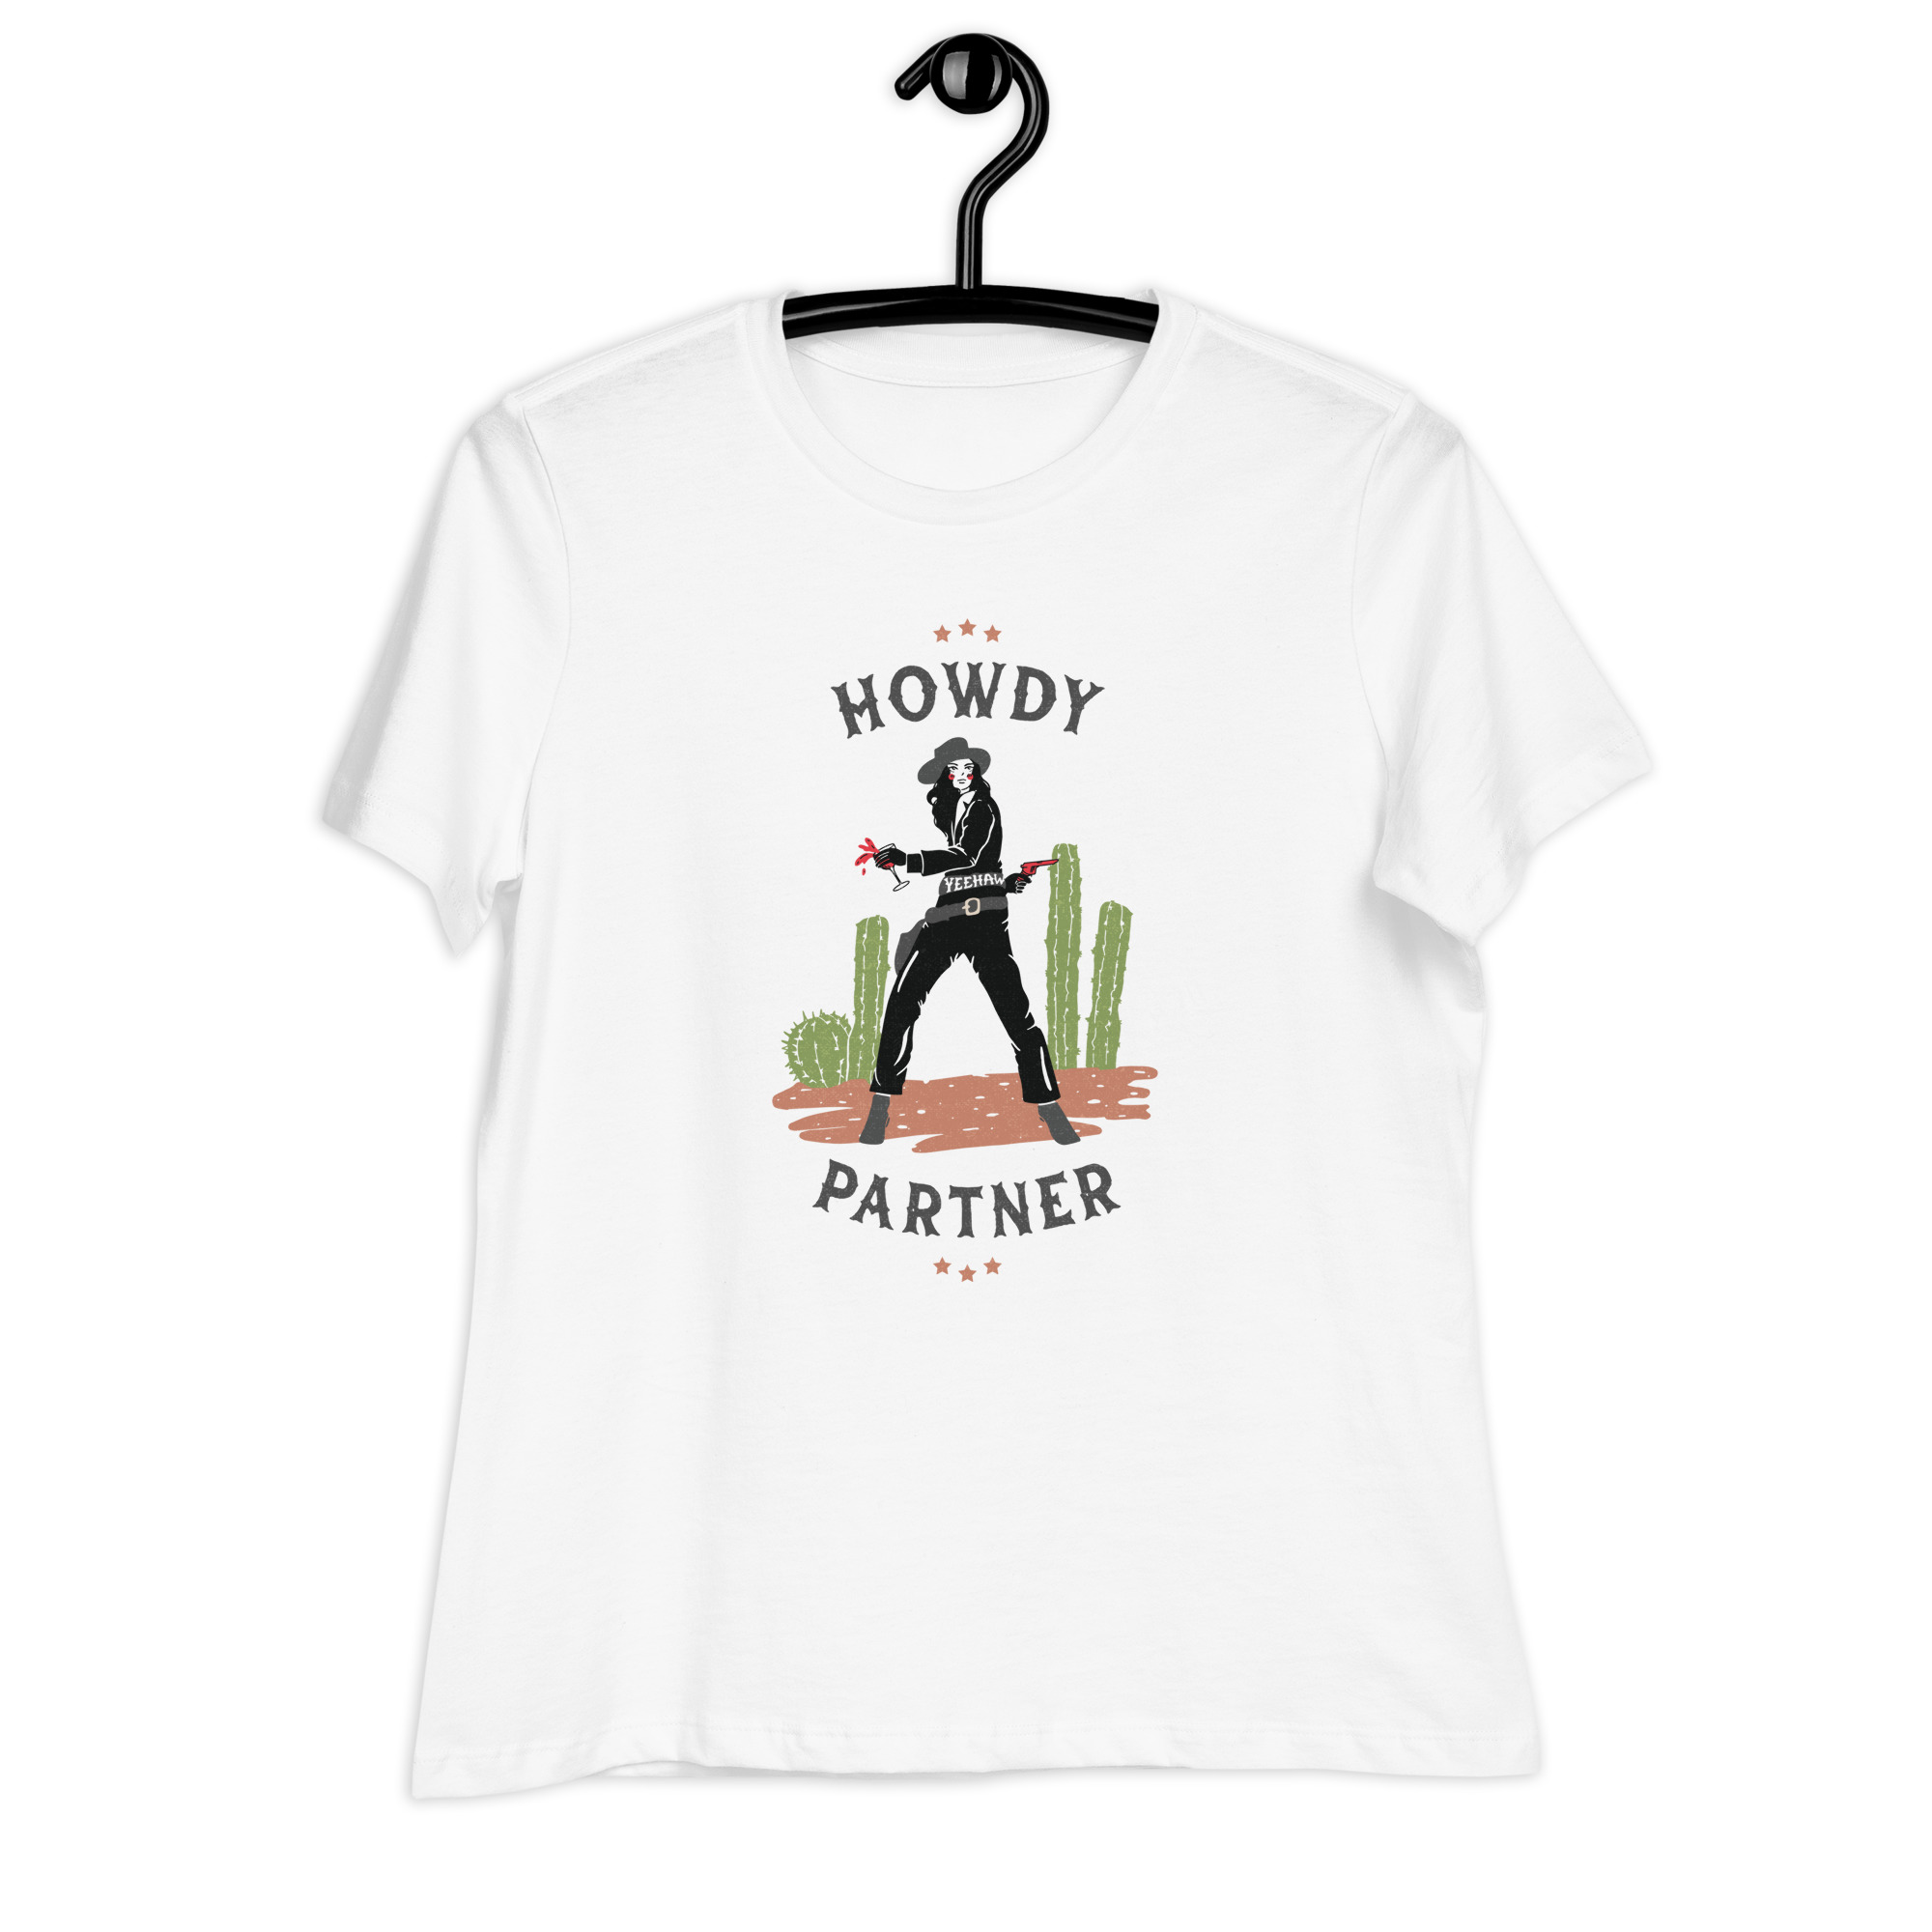 Howdy Partner! Women's T-Shirt